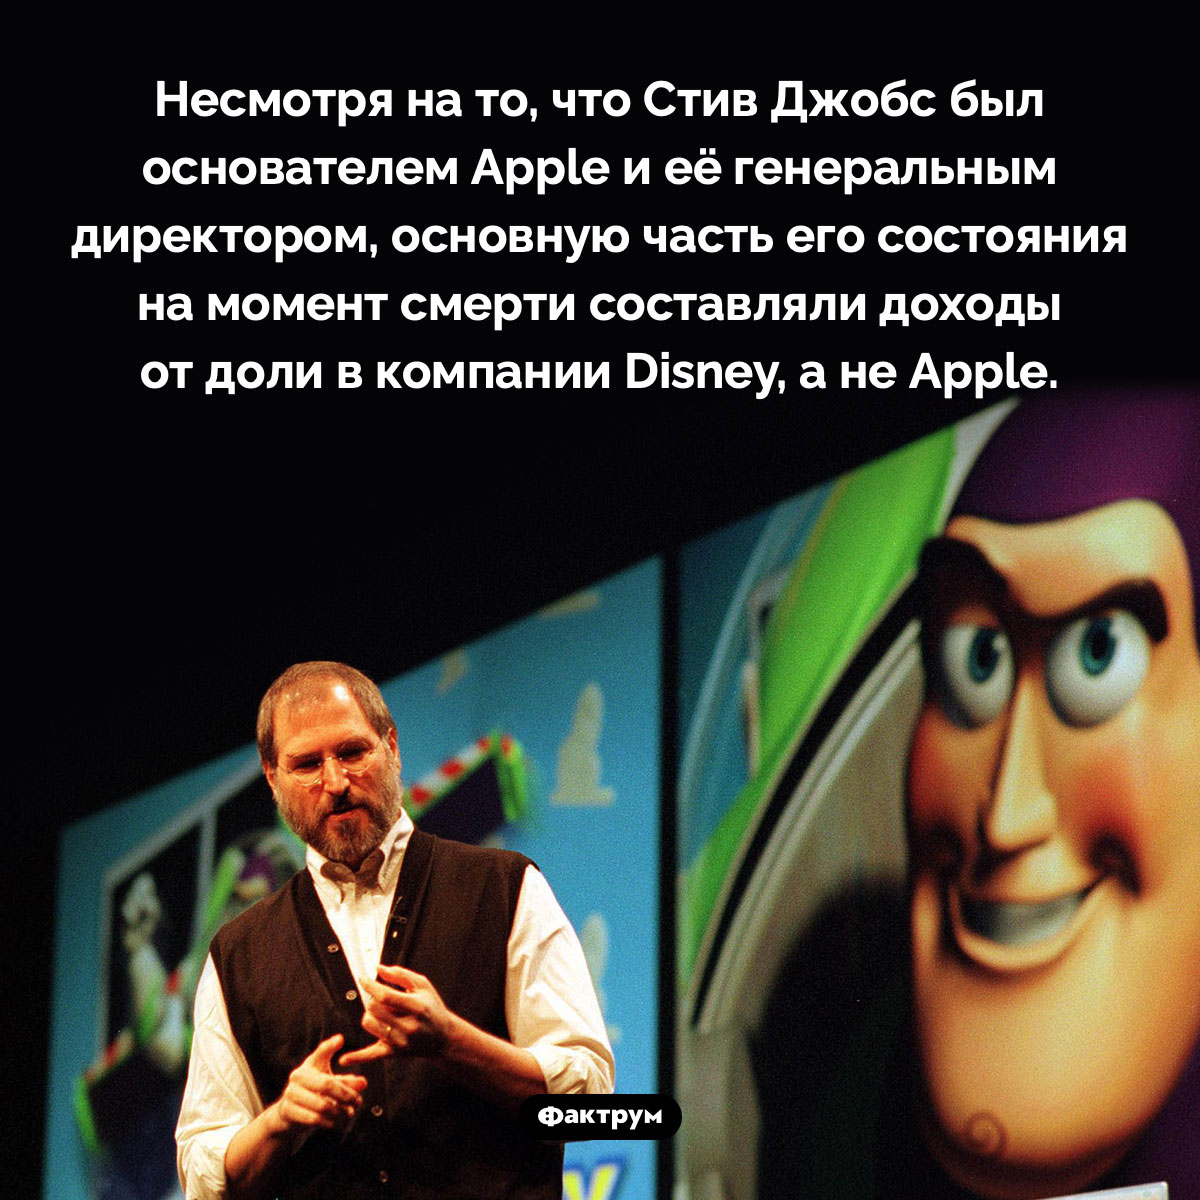 Стив Джобс больше зарабатывал на Disney, а не на Apple. Несмотря на то, что Стив Джобс был основателем Apple и её генеральным директором, основную часть его состояния на момент смерти составляли доходы от доли в компании Disney, а не Apple.